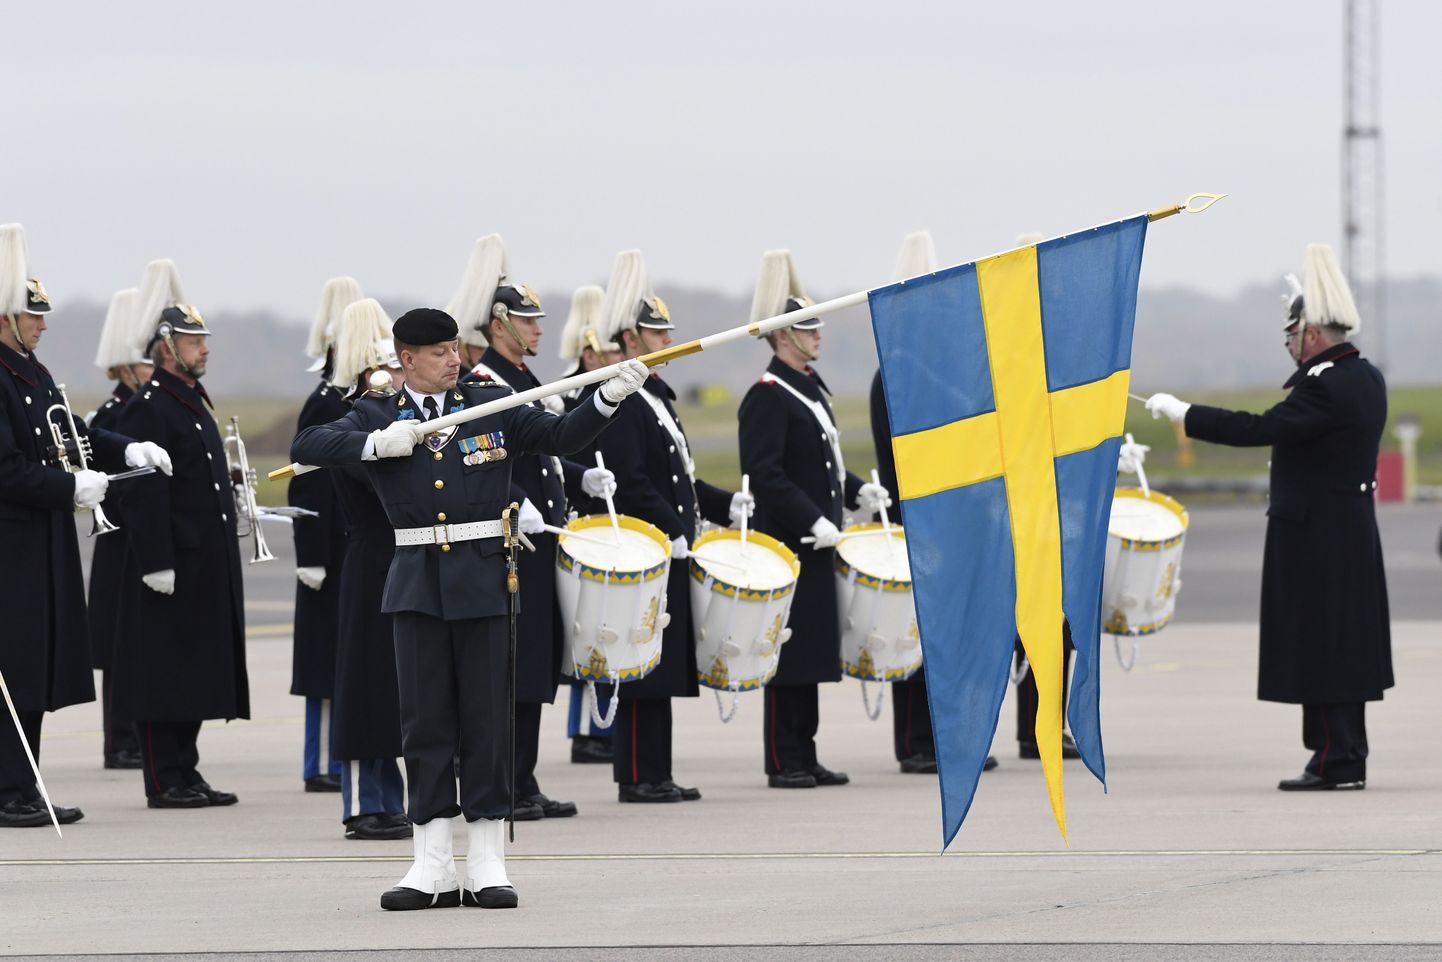 Rootsi sõjaväekorpus. Foto on illustratiivne.